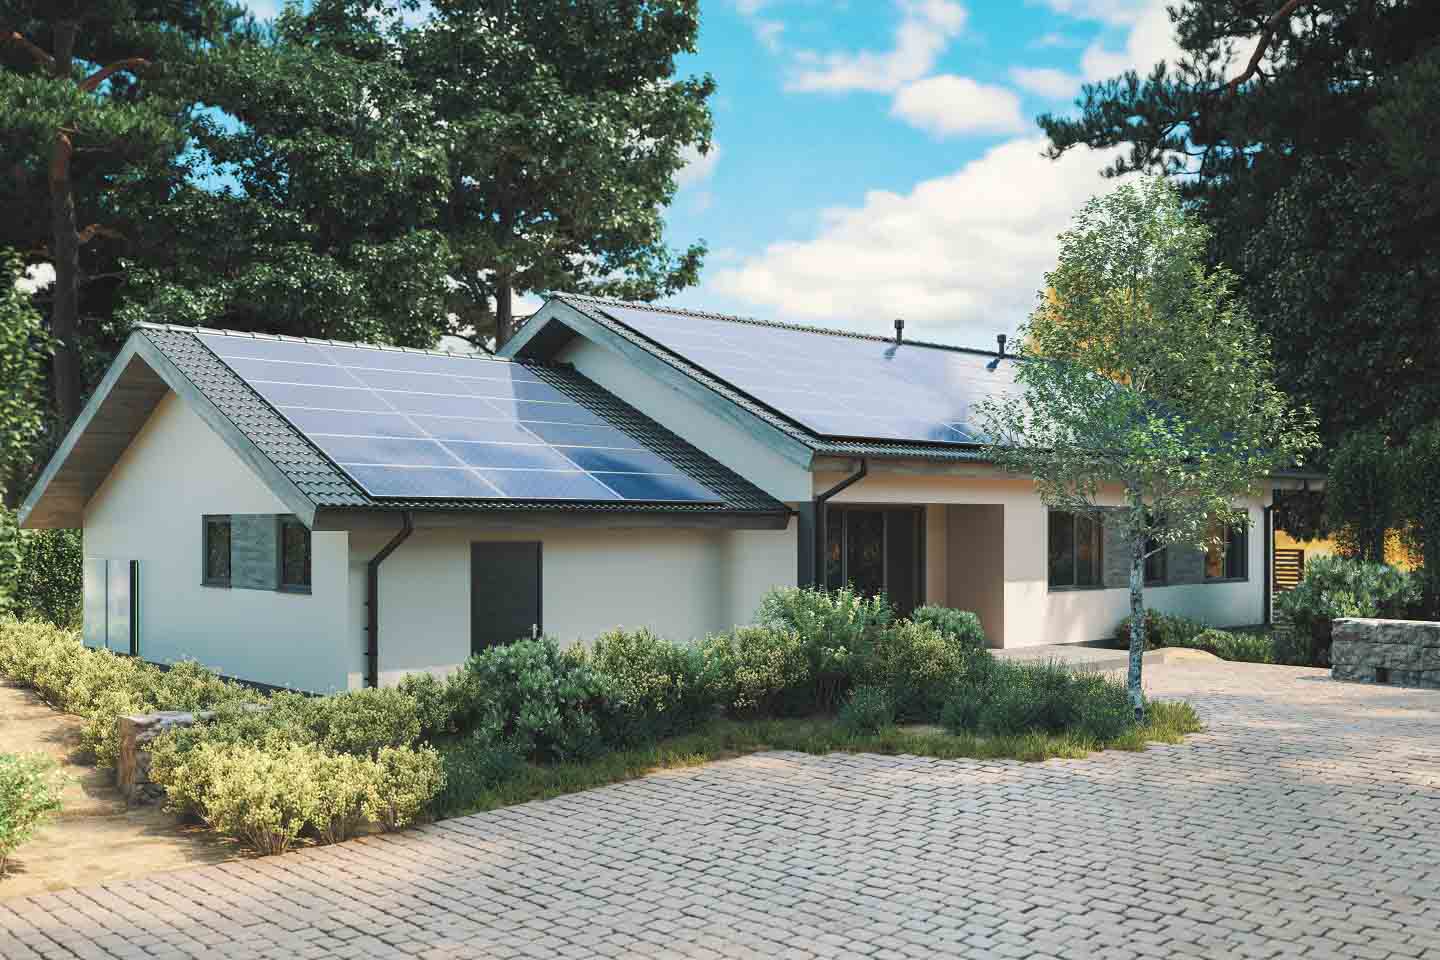 Haus mit Photovoltaik-Anlage auf dem Dach.